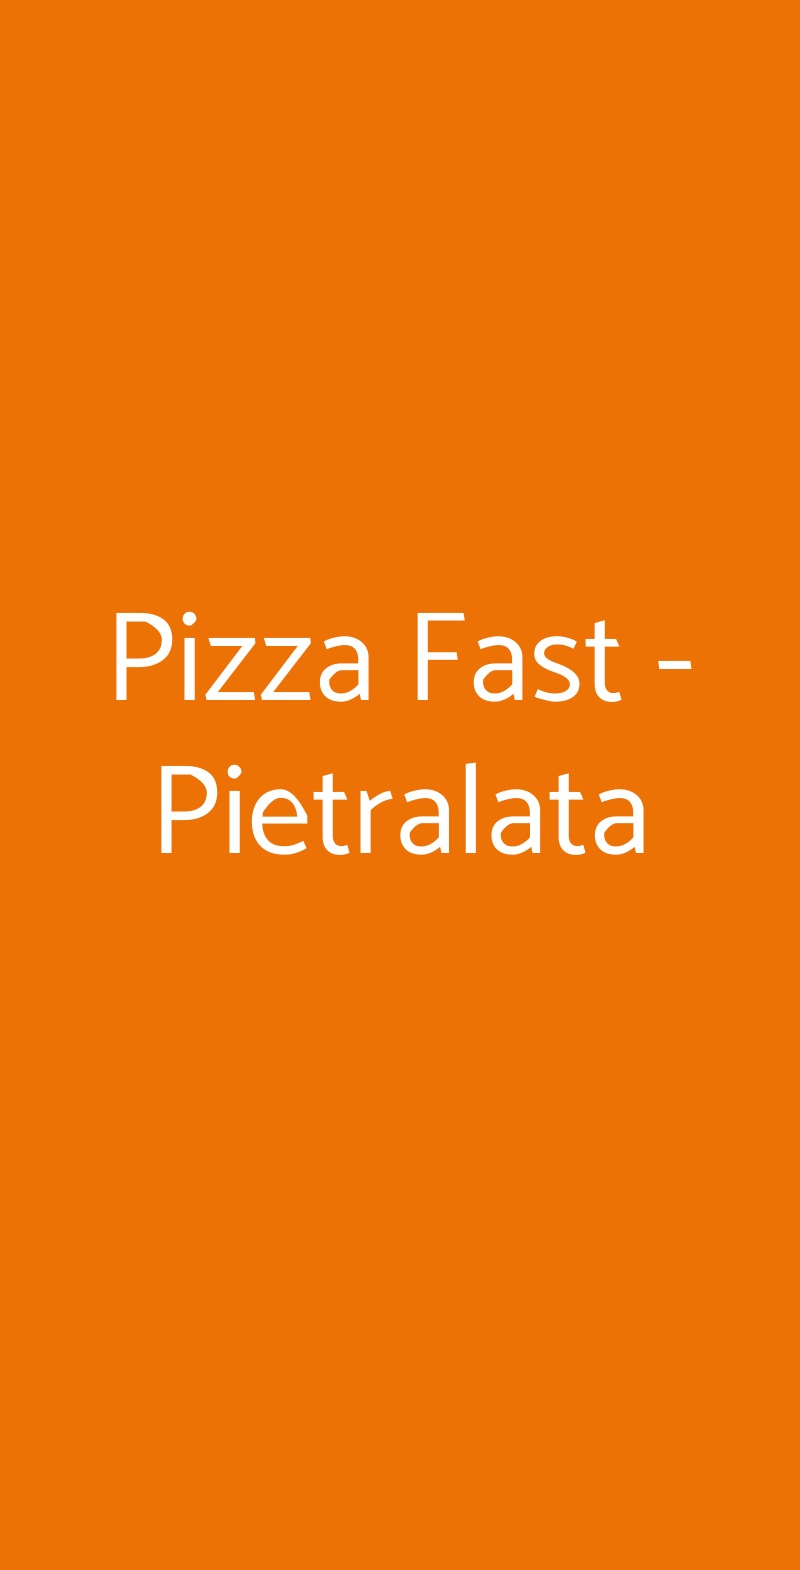 Pizza Fast - Pietralata Roma menù 1 pagina